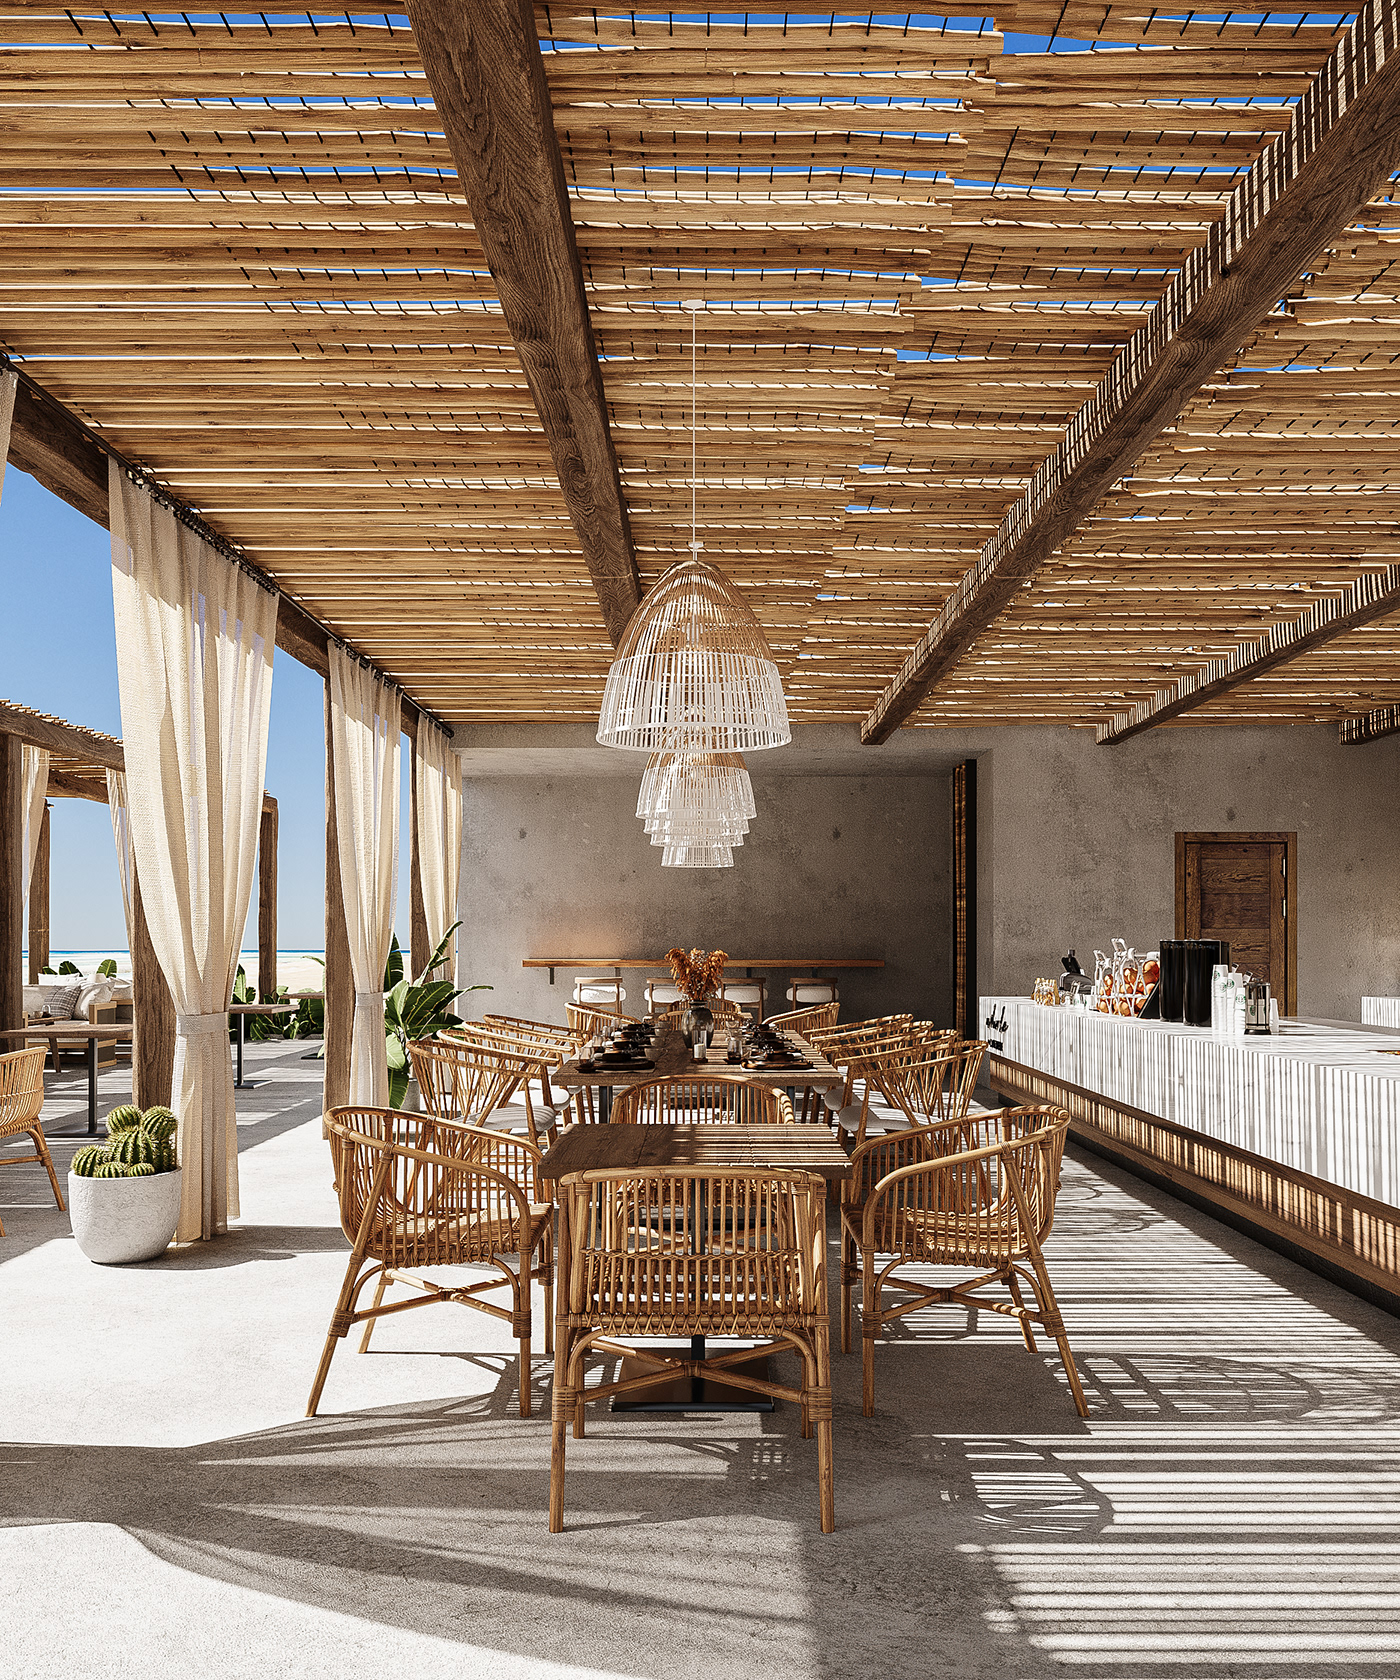 cafe restaurant interiordesign visualization Render 3dsmax sea design beach Outdoor